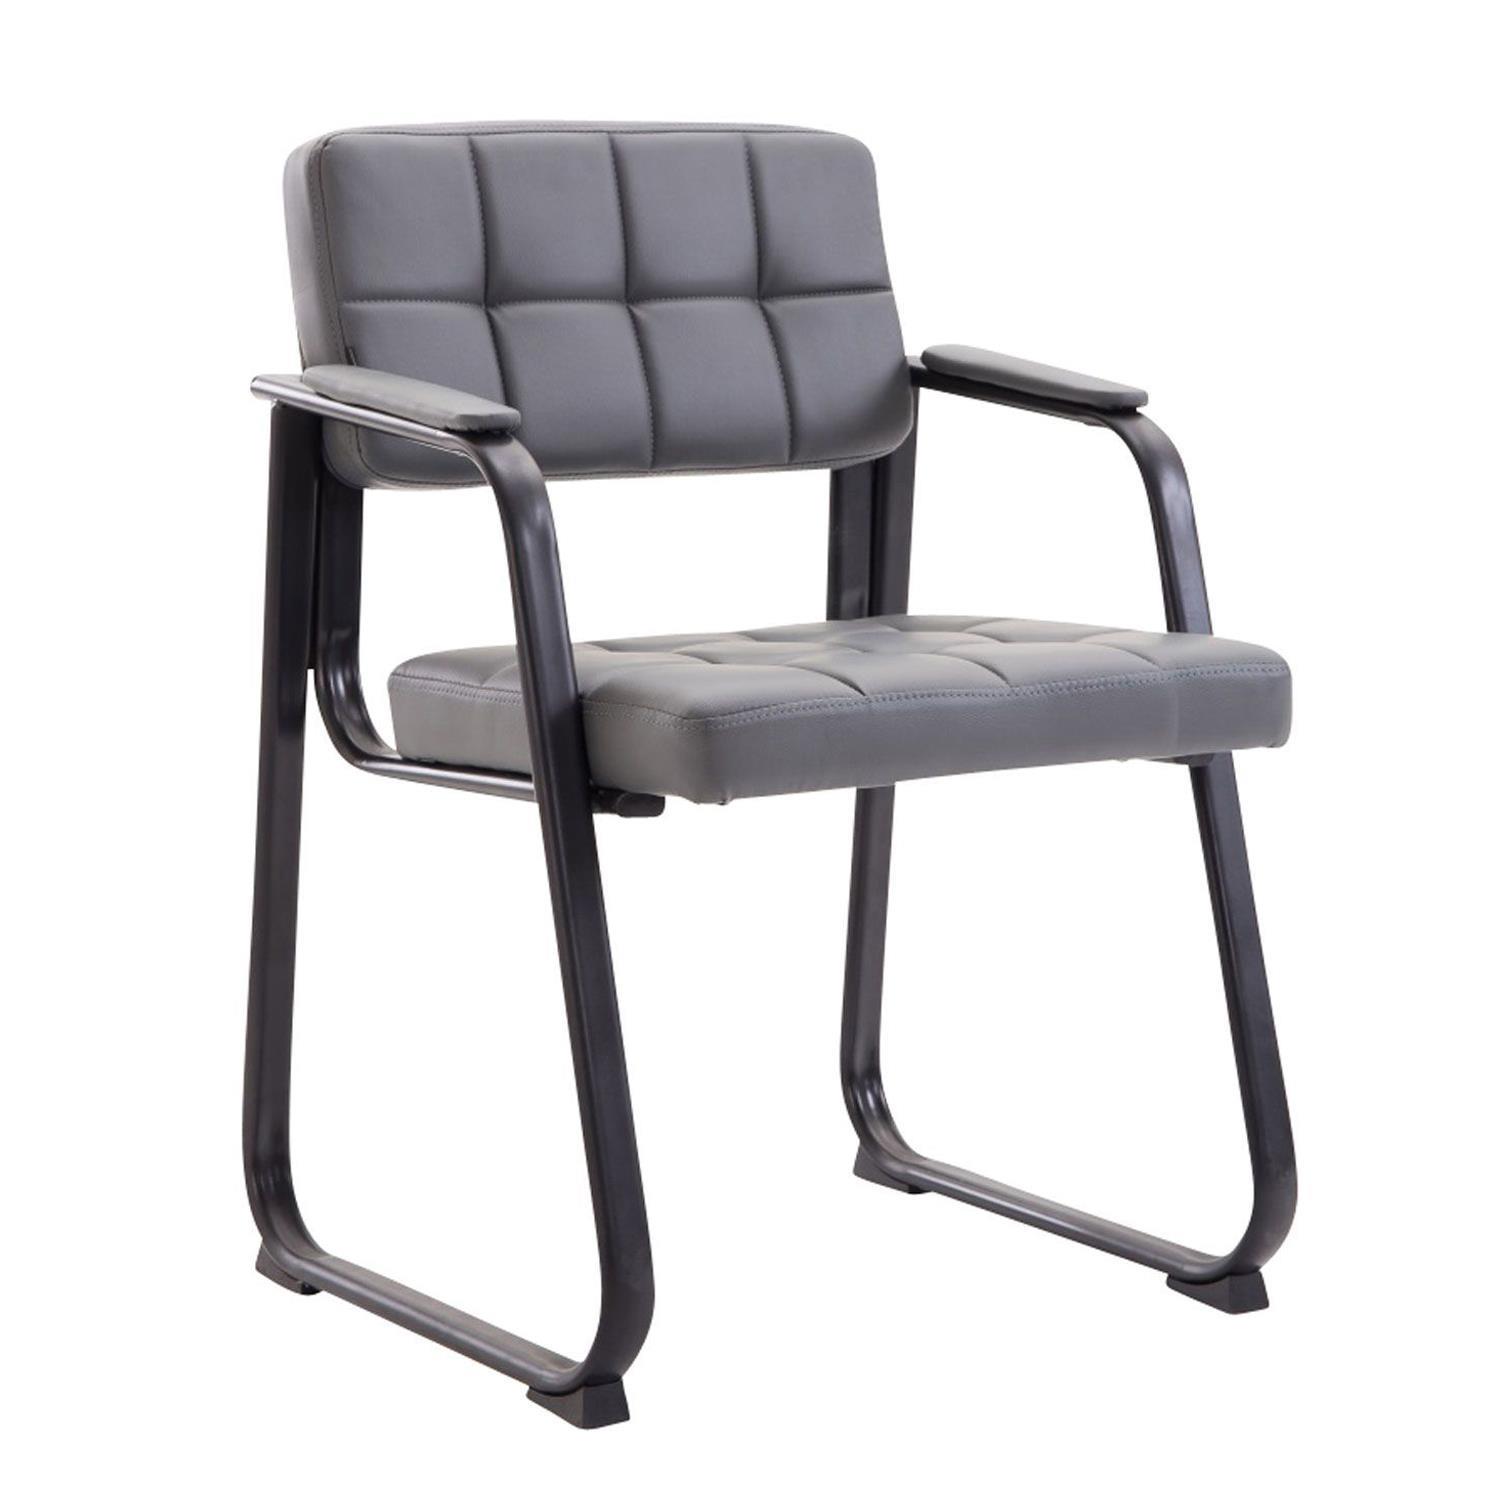 Cadeira de Visita CABANA, Design Moderno, Em Pele, Cor Cinzento